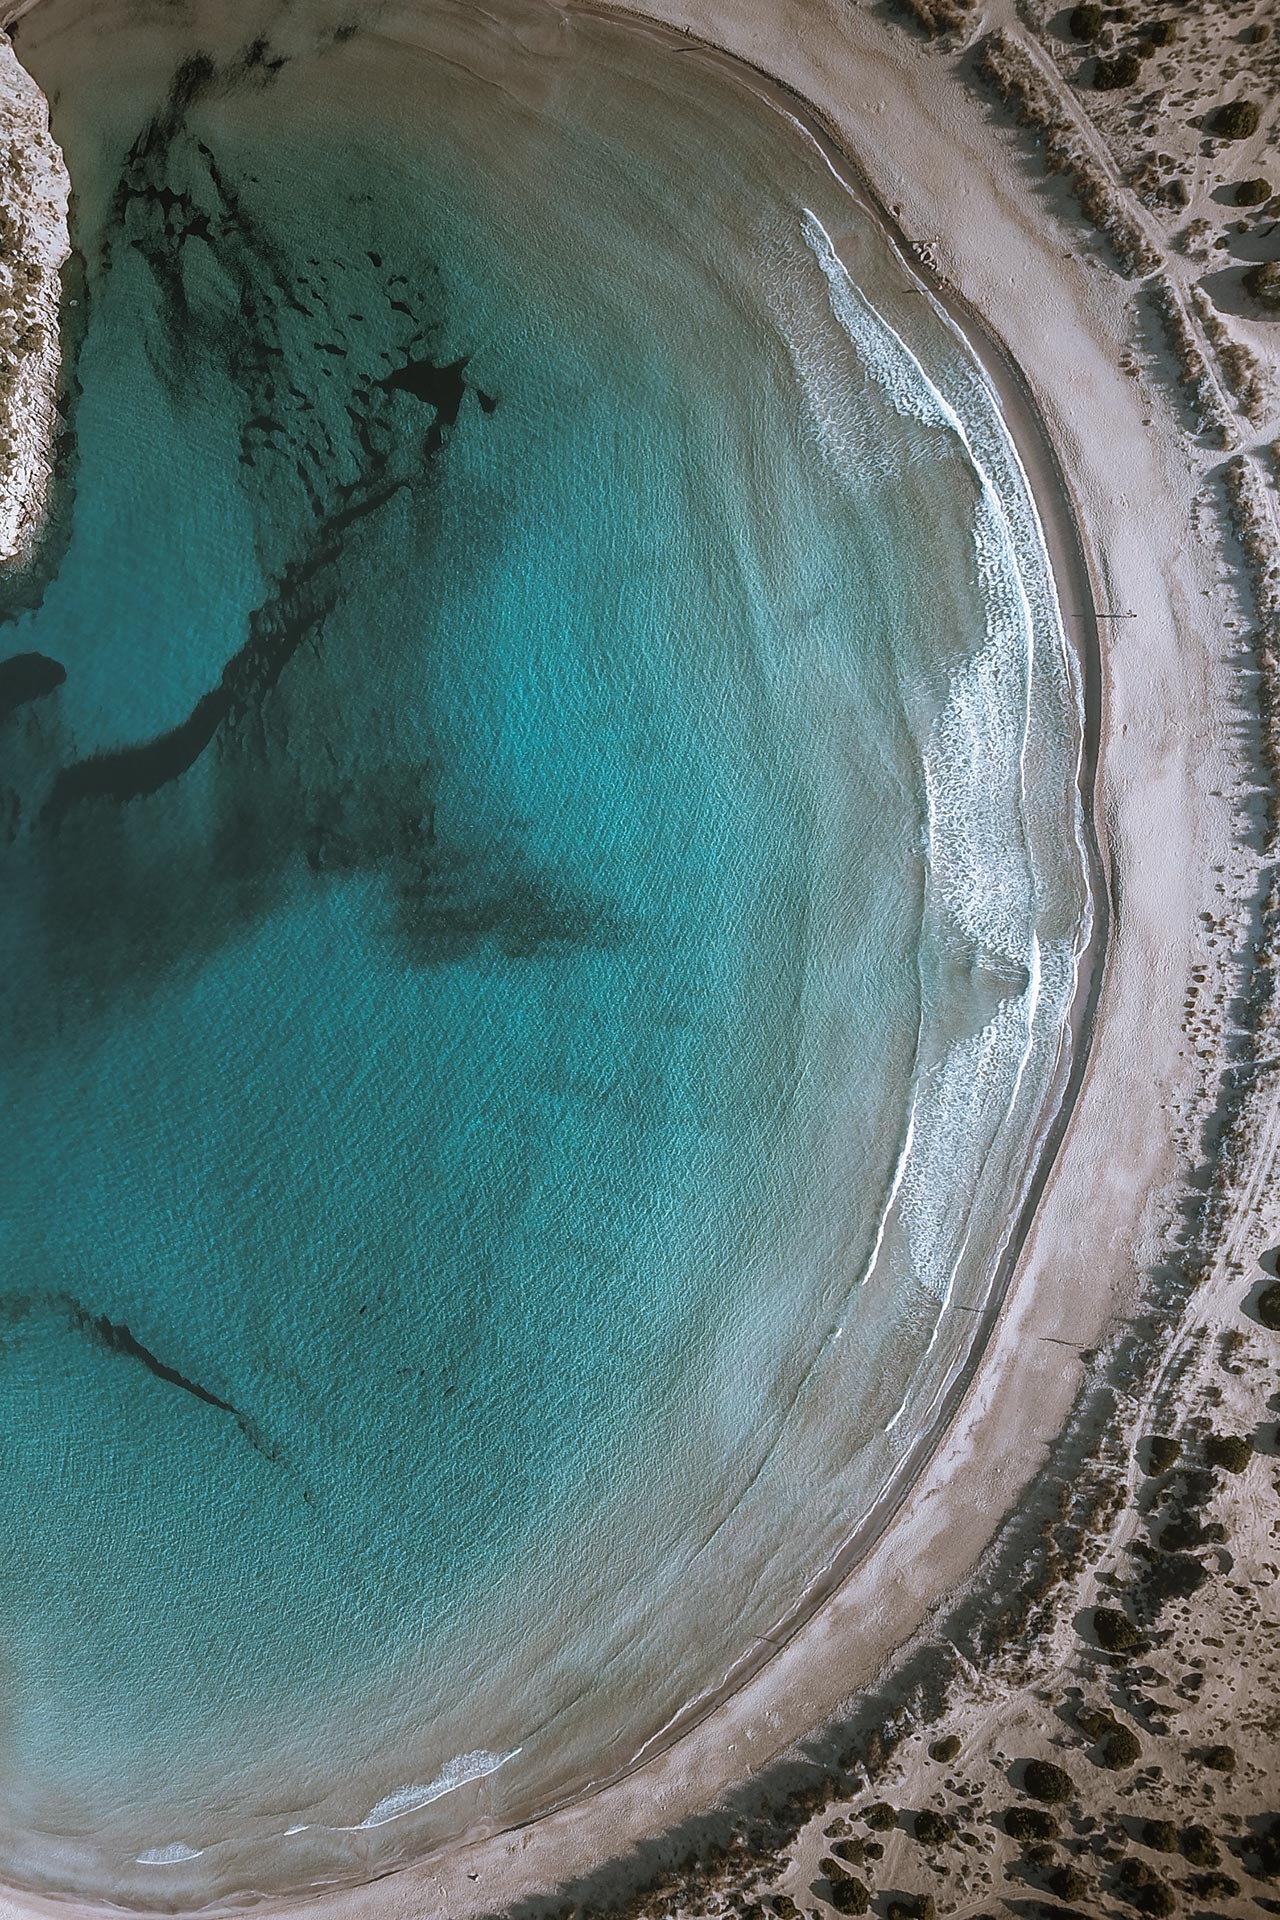 Η παραλία της Βοϊδοκοιλιάς στη Μεσσηνία που εντυπωσιάζει με το ημικυκλικό της σχήμα, τη χρυσή άμμο και την γαλαζοπράσινη θάλασσα 